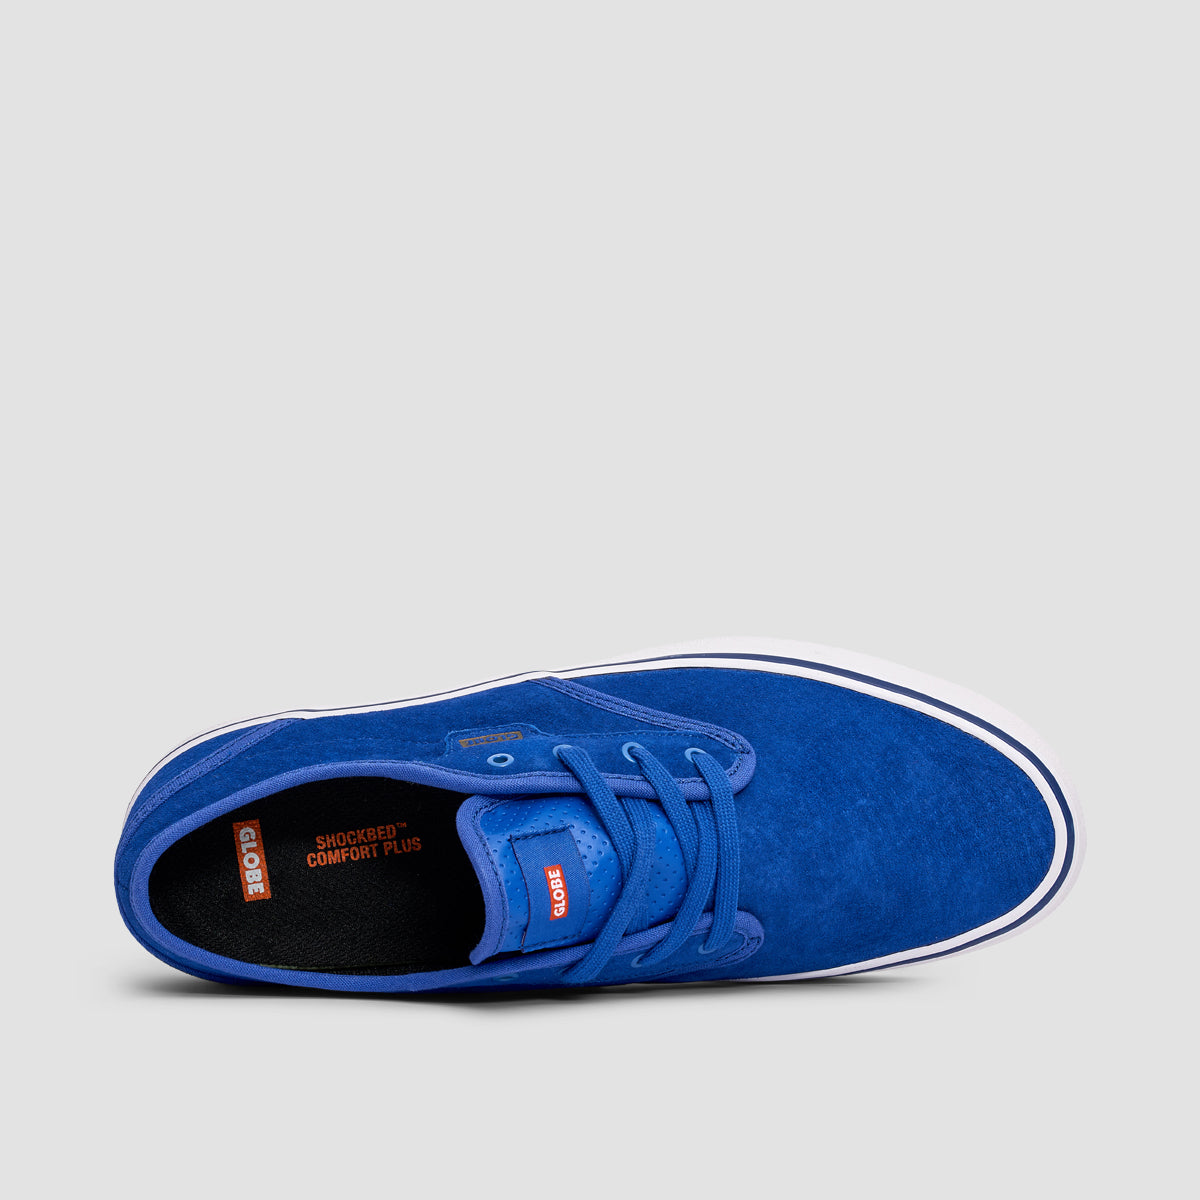 Globe Motley II Shoes - Royal Blue/White